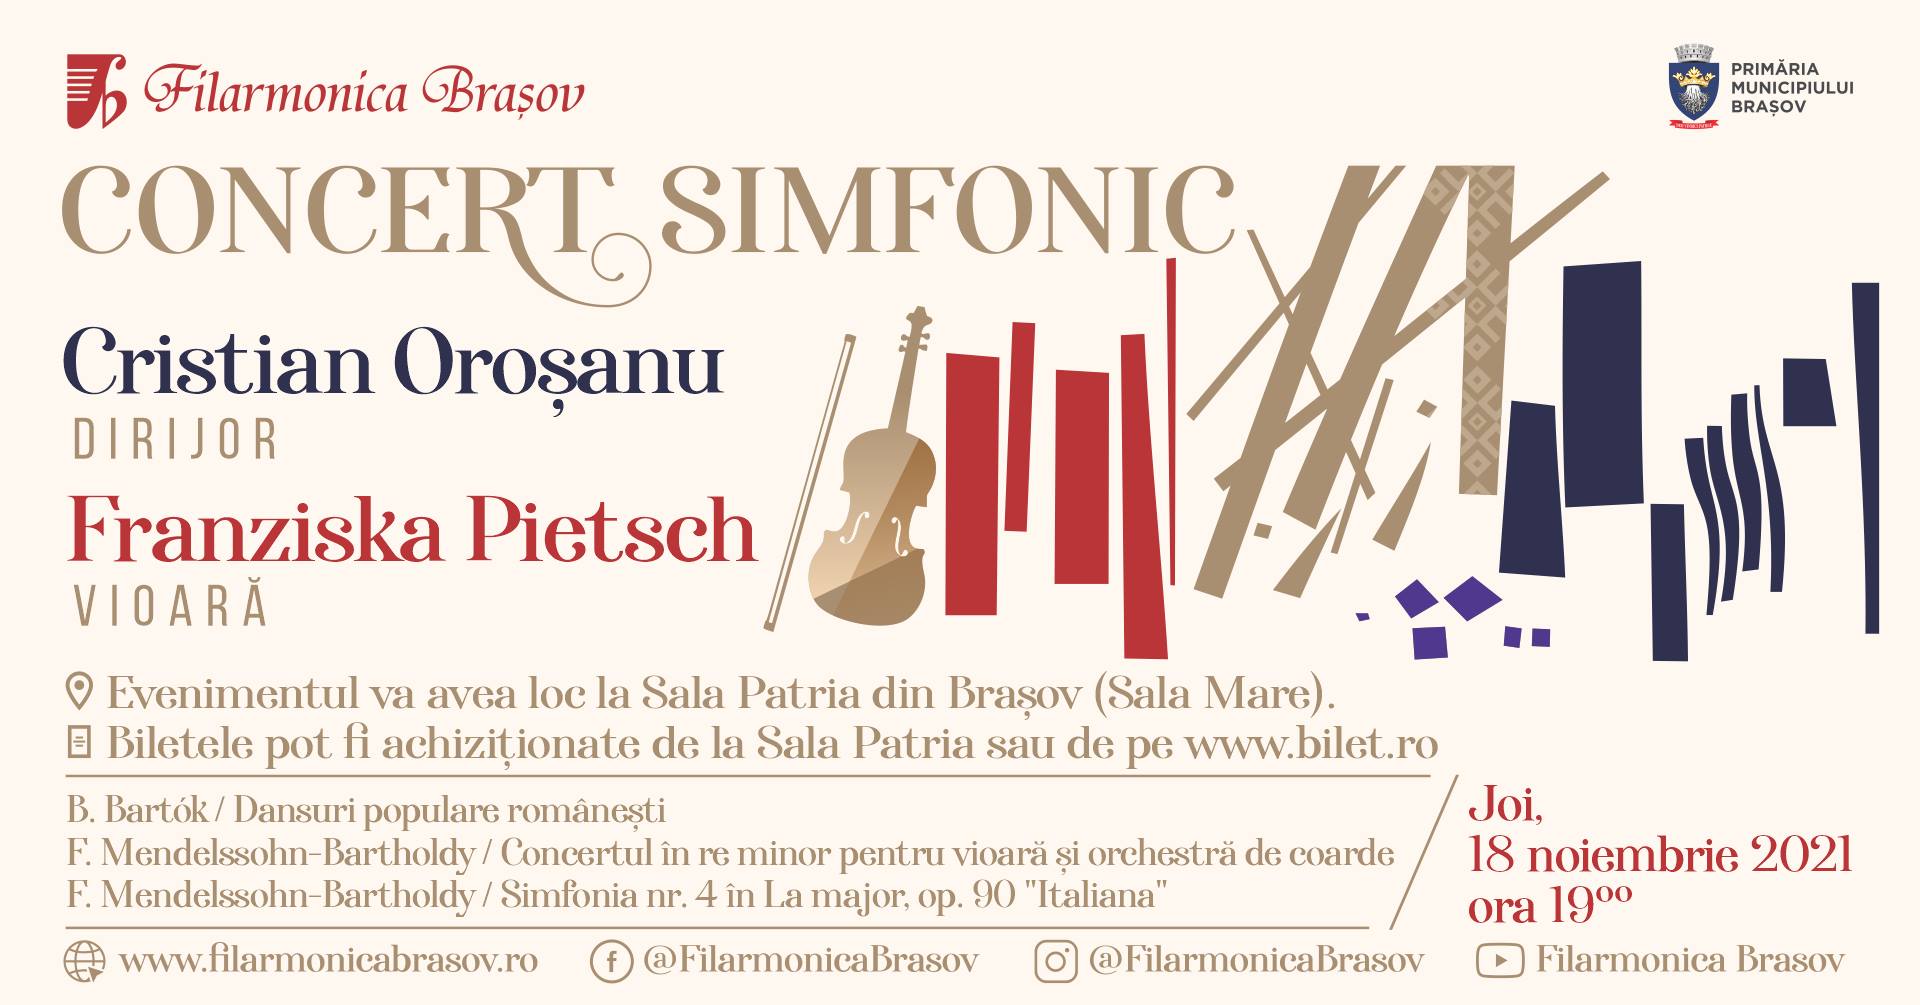 CONCERT SIMFONIC la Filarmonica Brașov